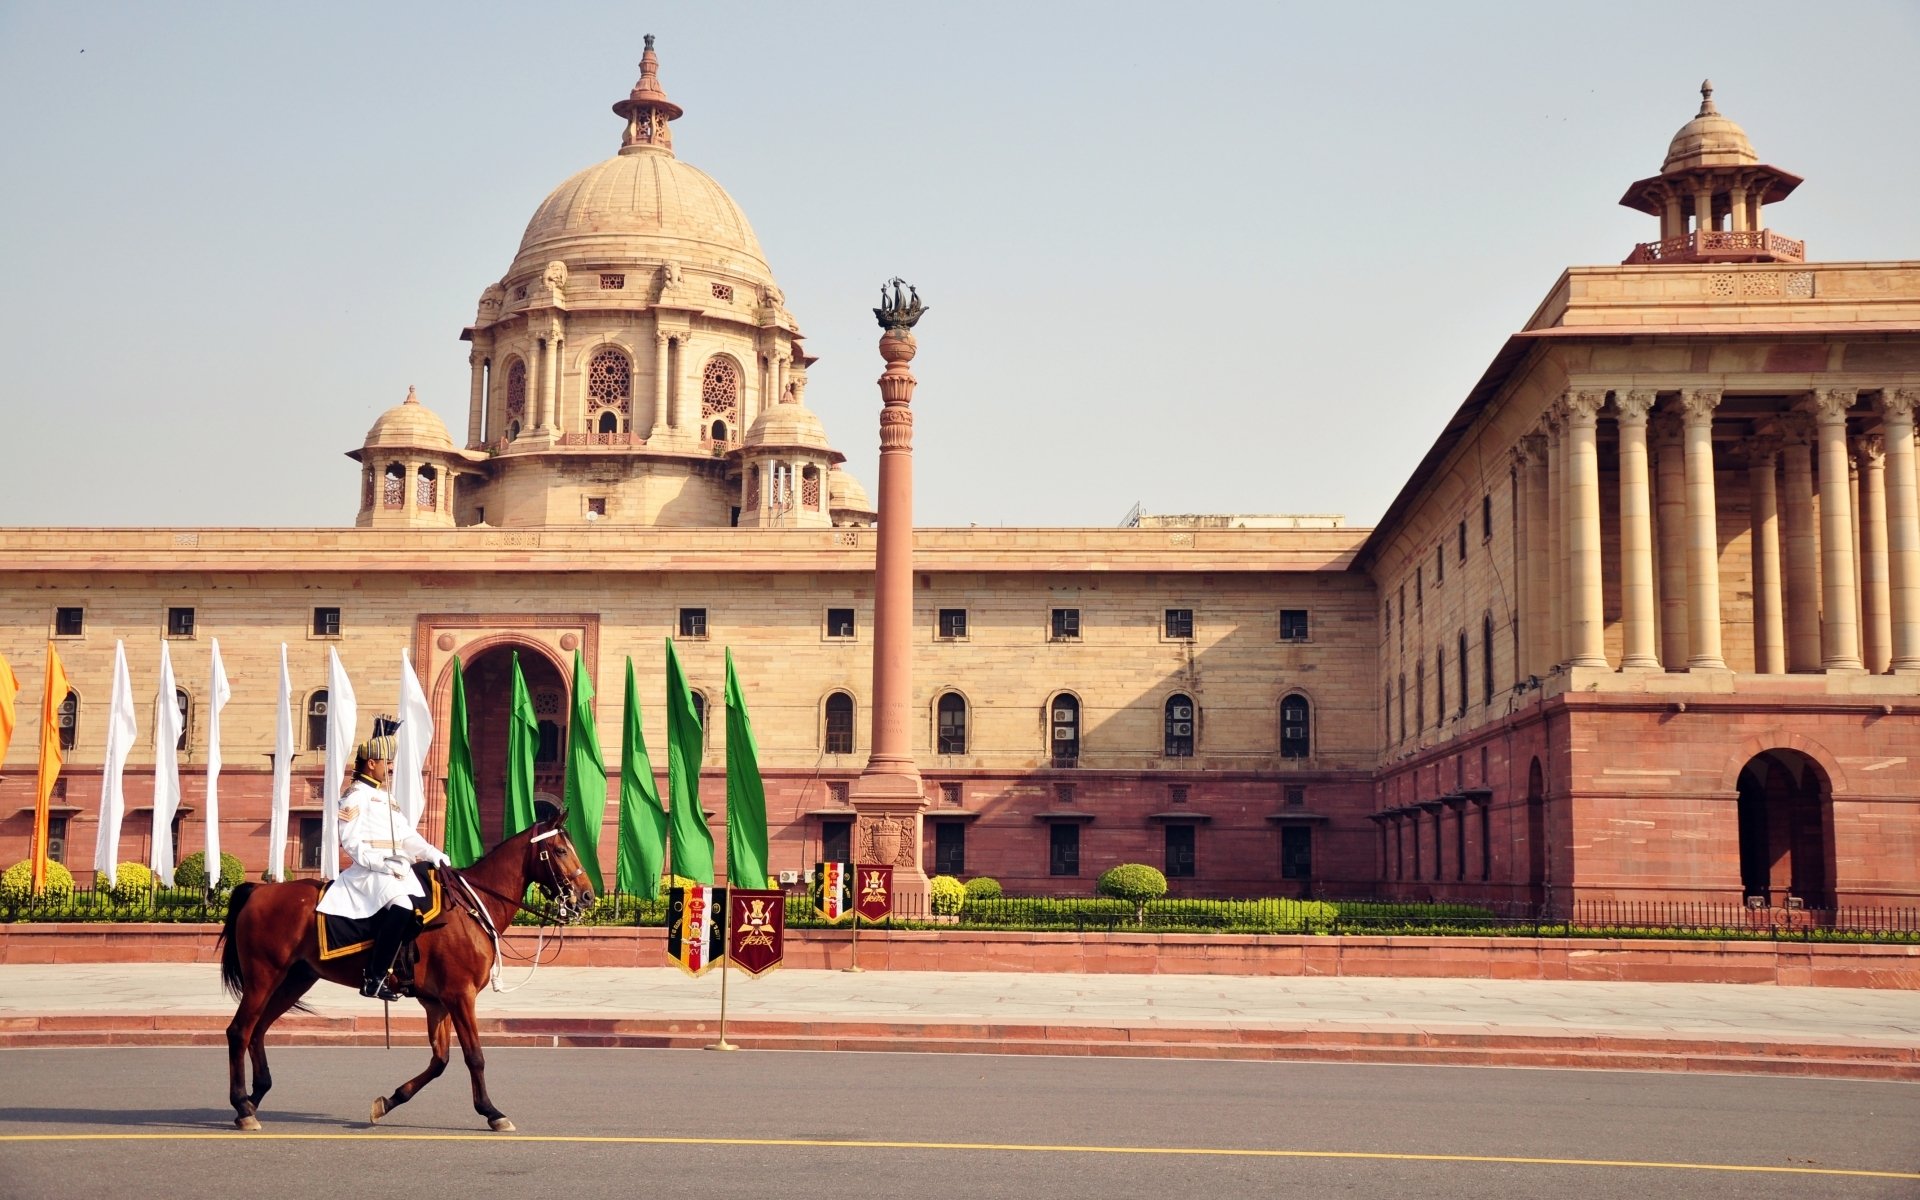 24+] Parliament of India Wallpapers - WallpaperSafari